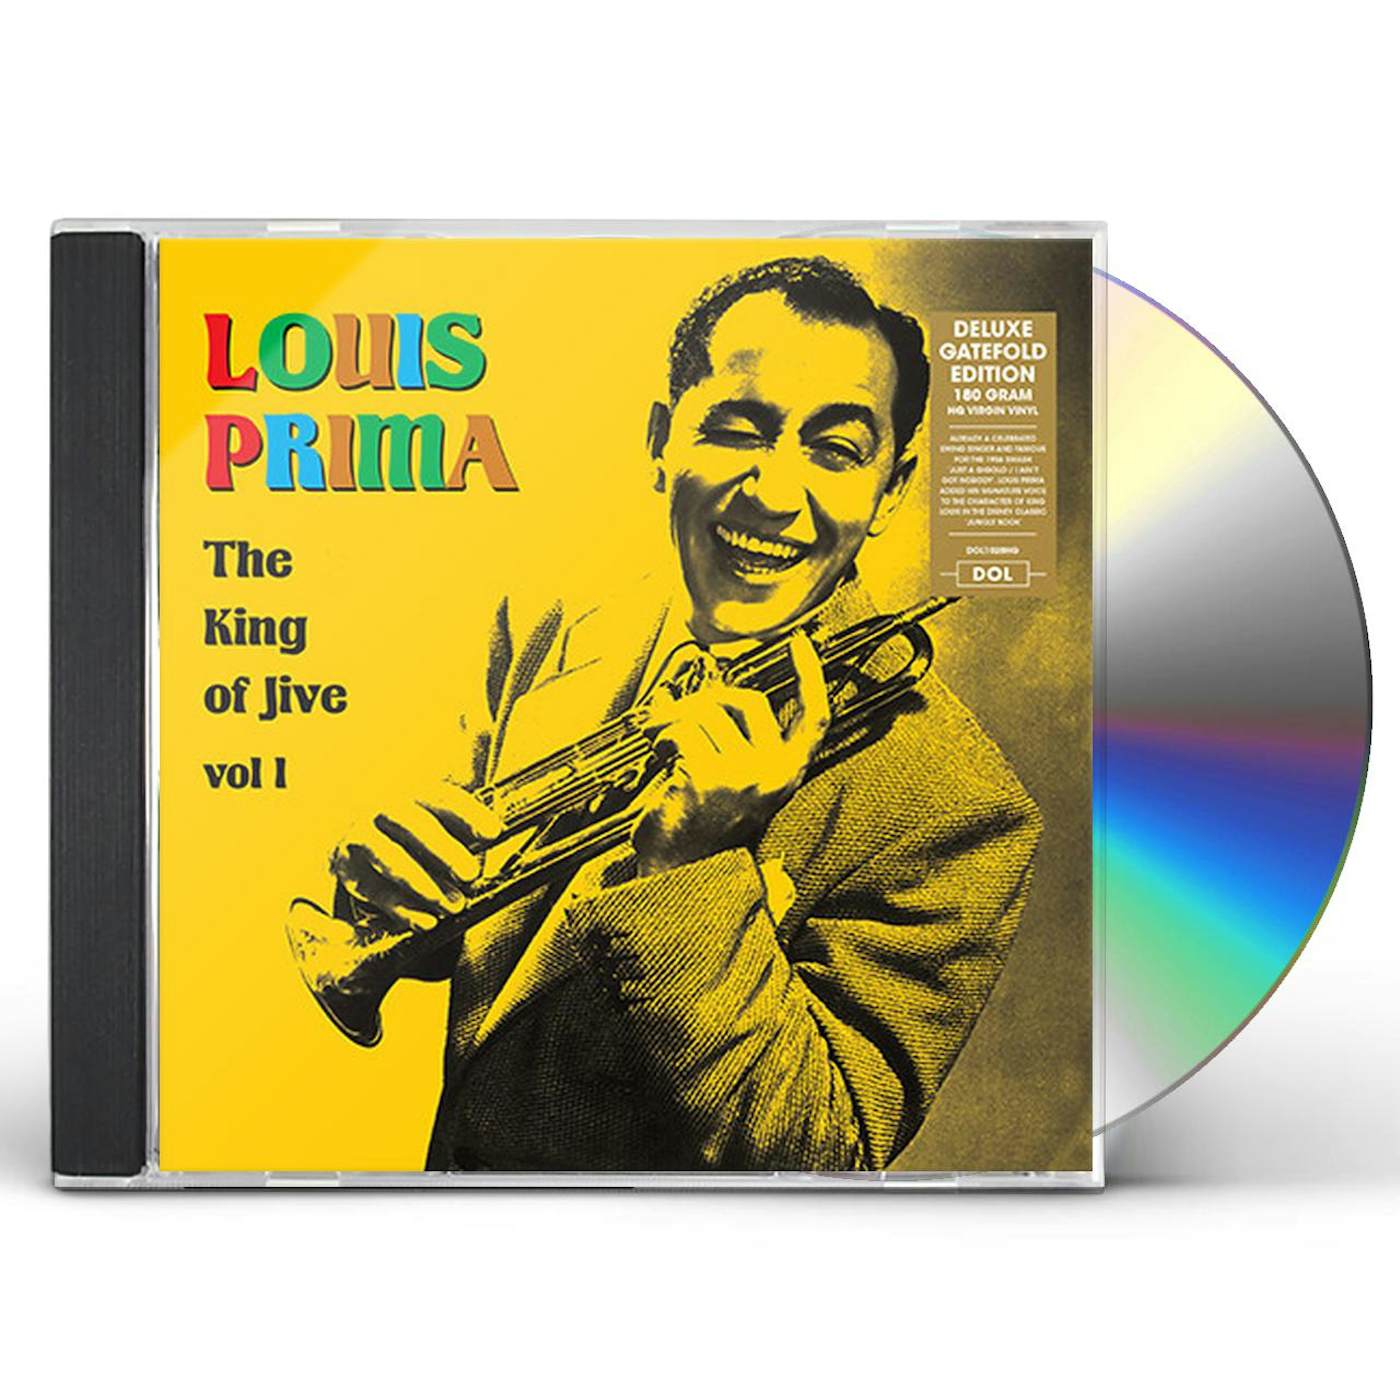 Louis Prima: The Wildest ! [ Original LP Vinyl ]